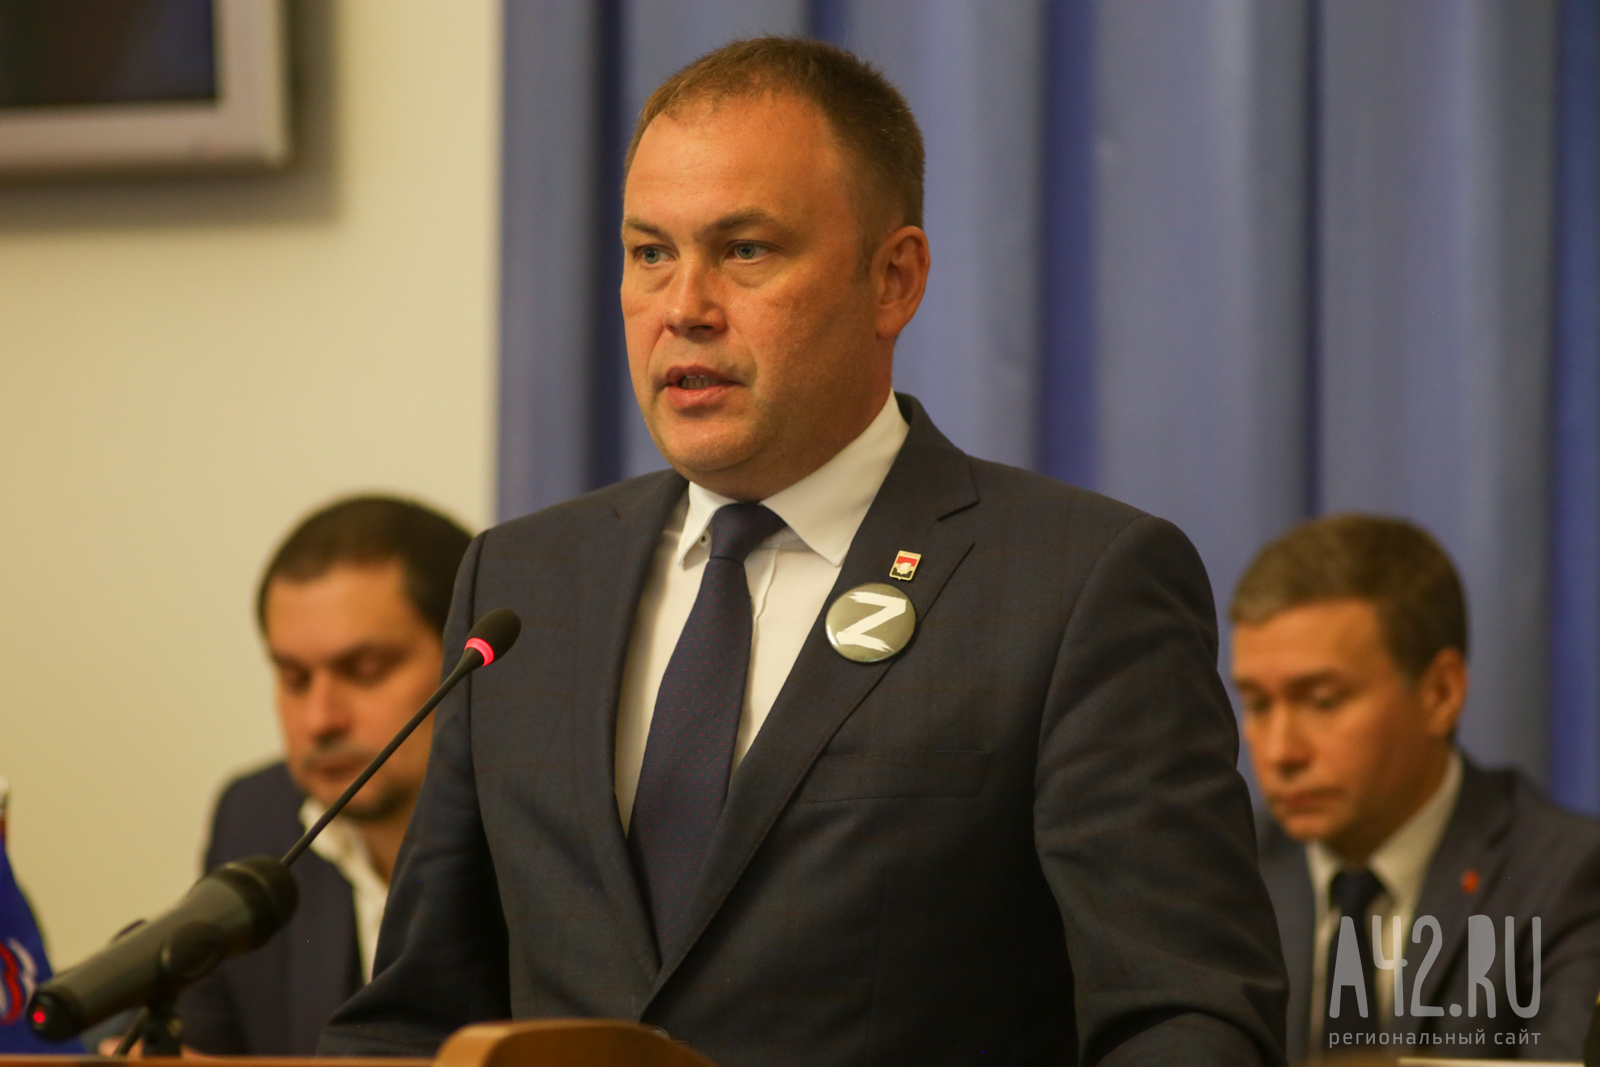 Представление врио губернатора Кузбасса состоится 21 мая